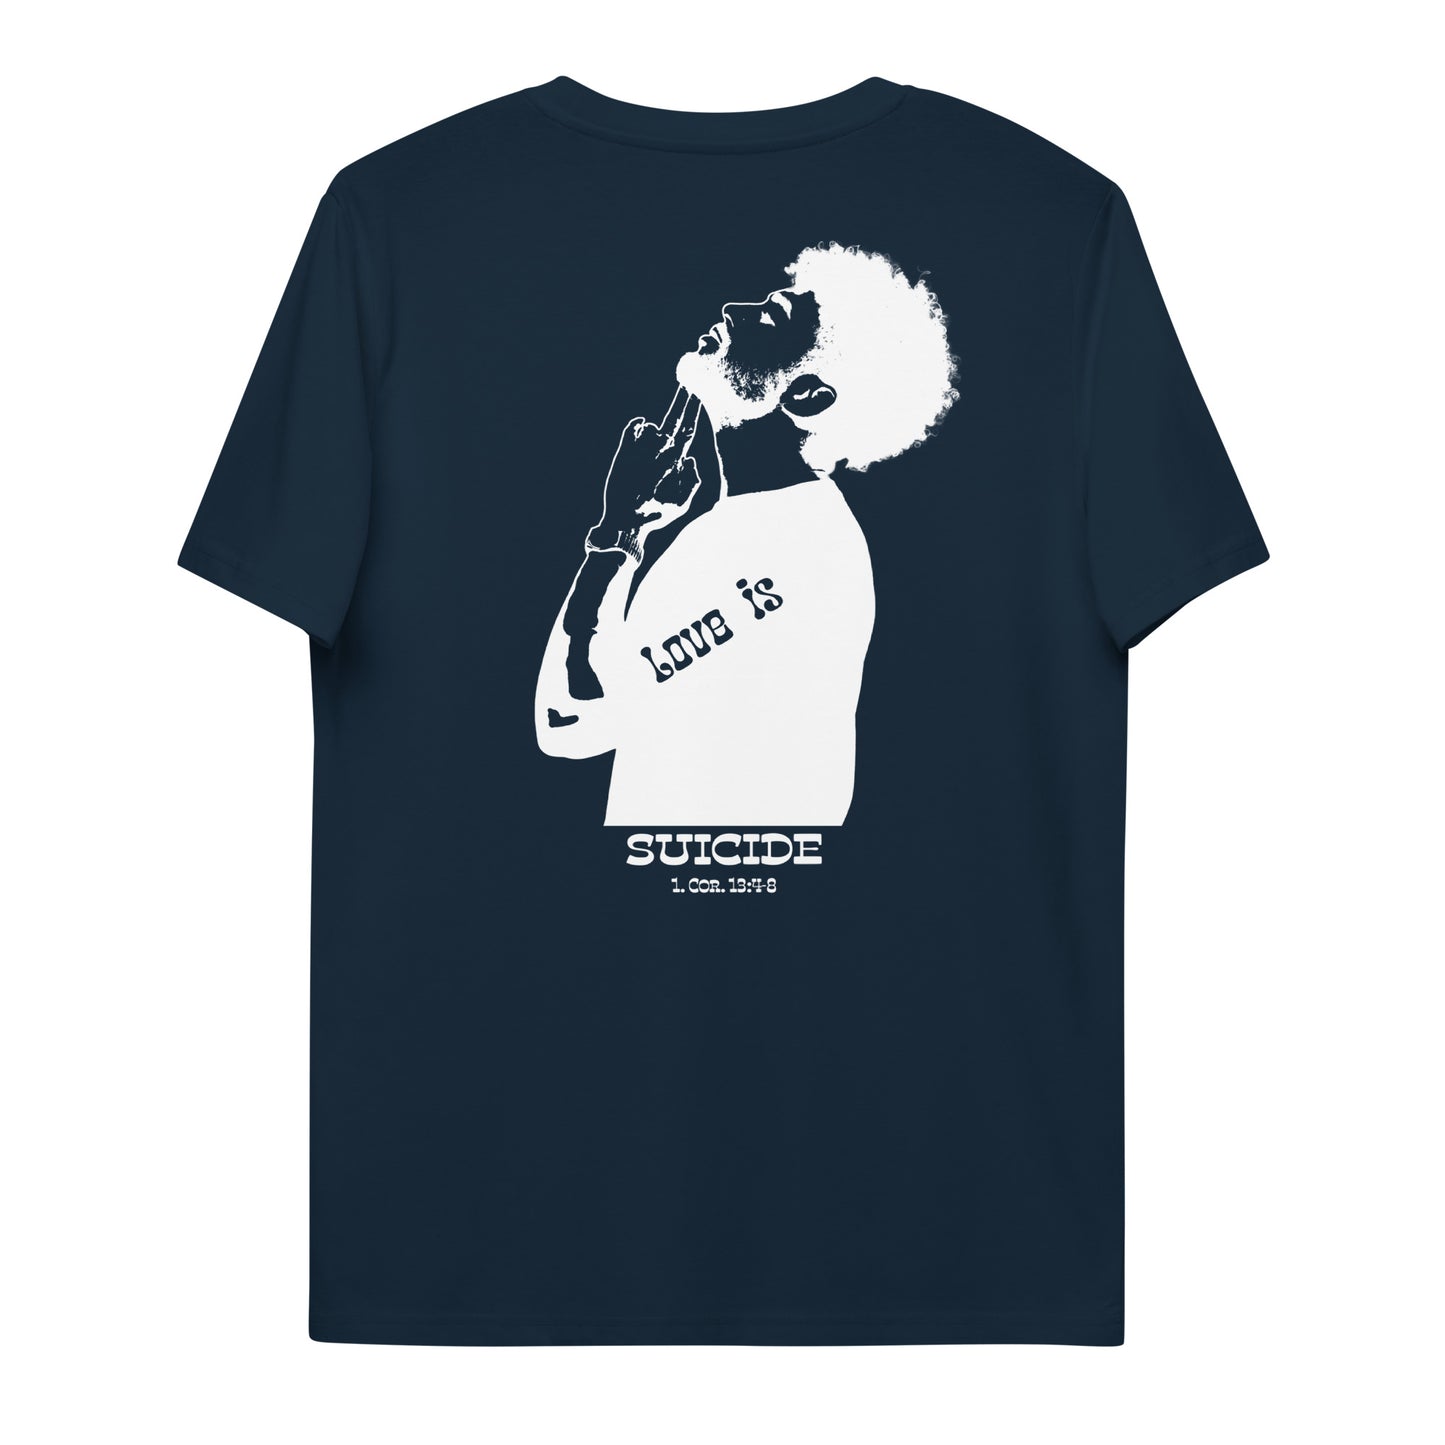 Love is Suicide - T-Shirt - Unisex